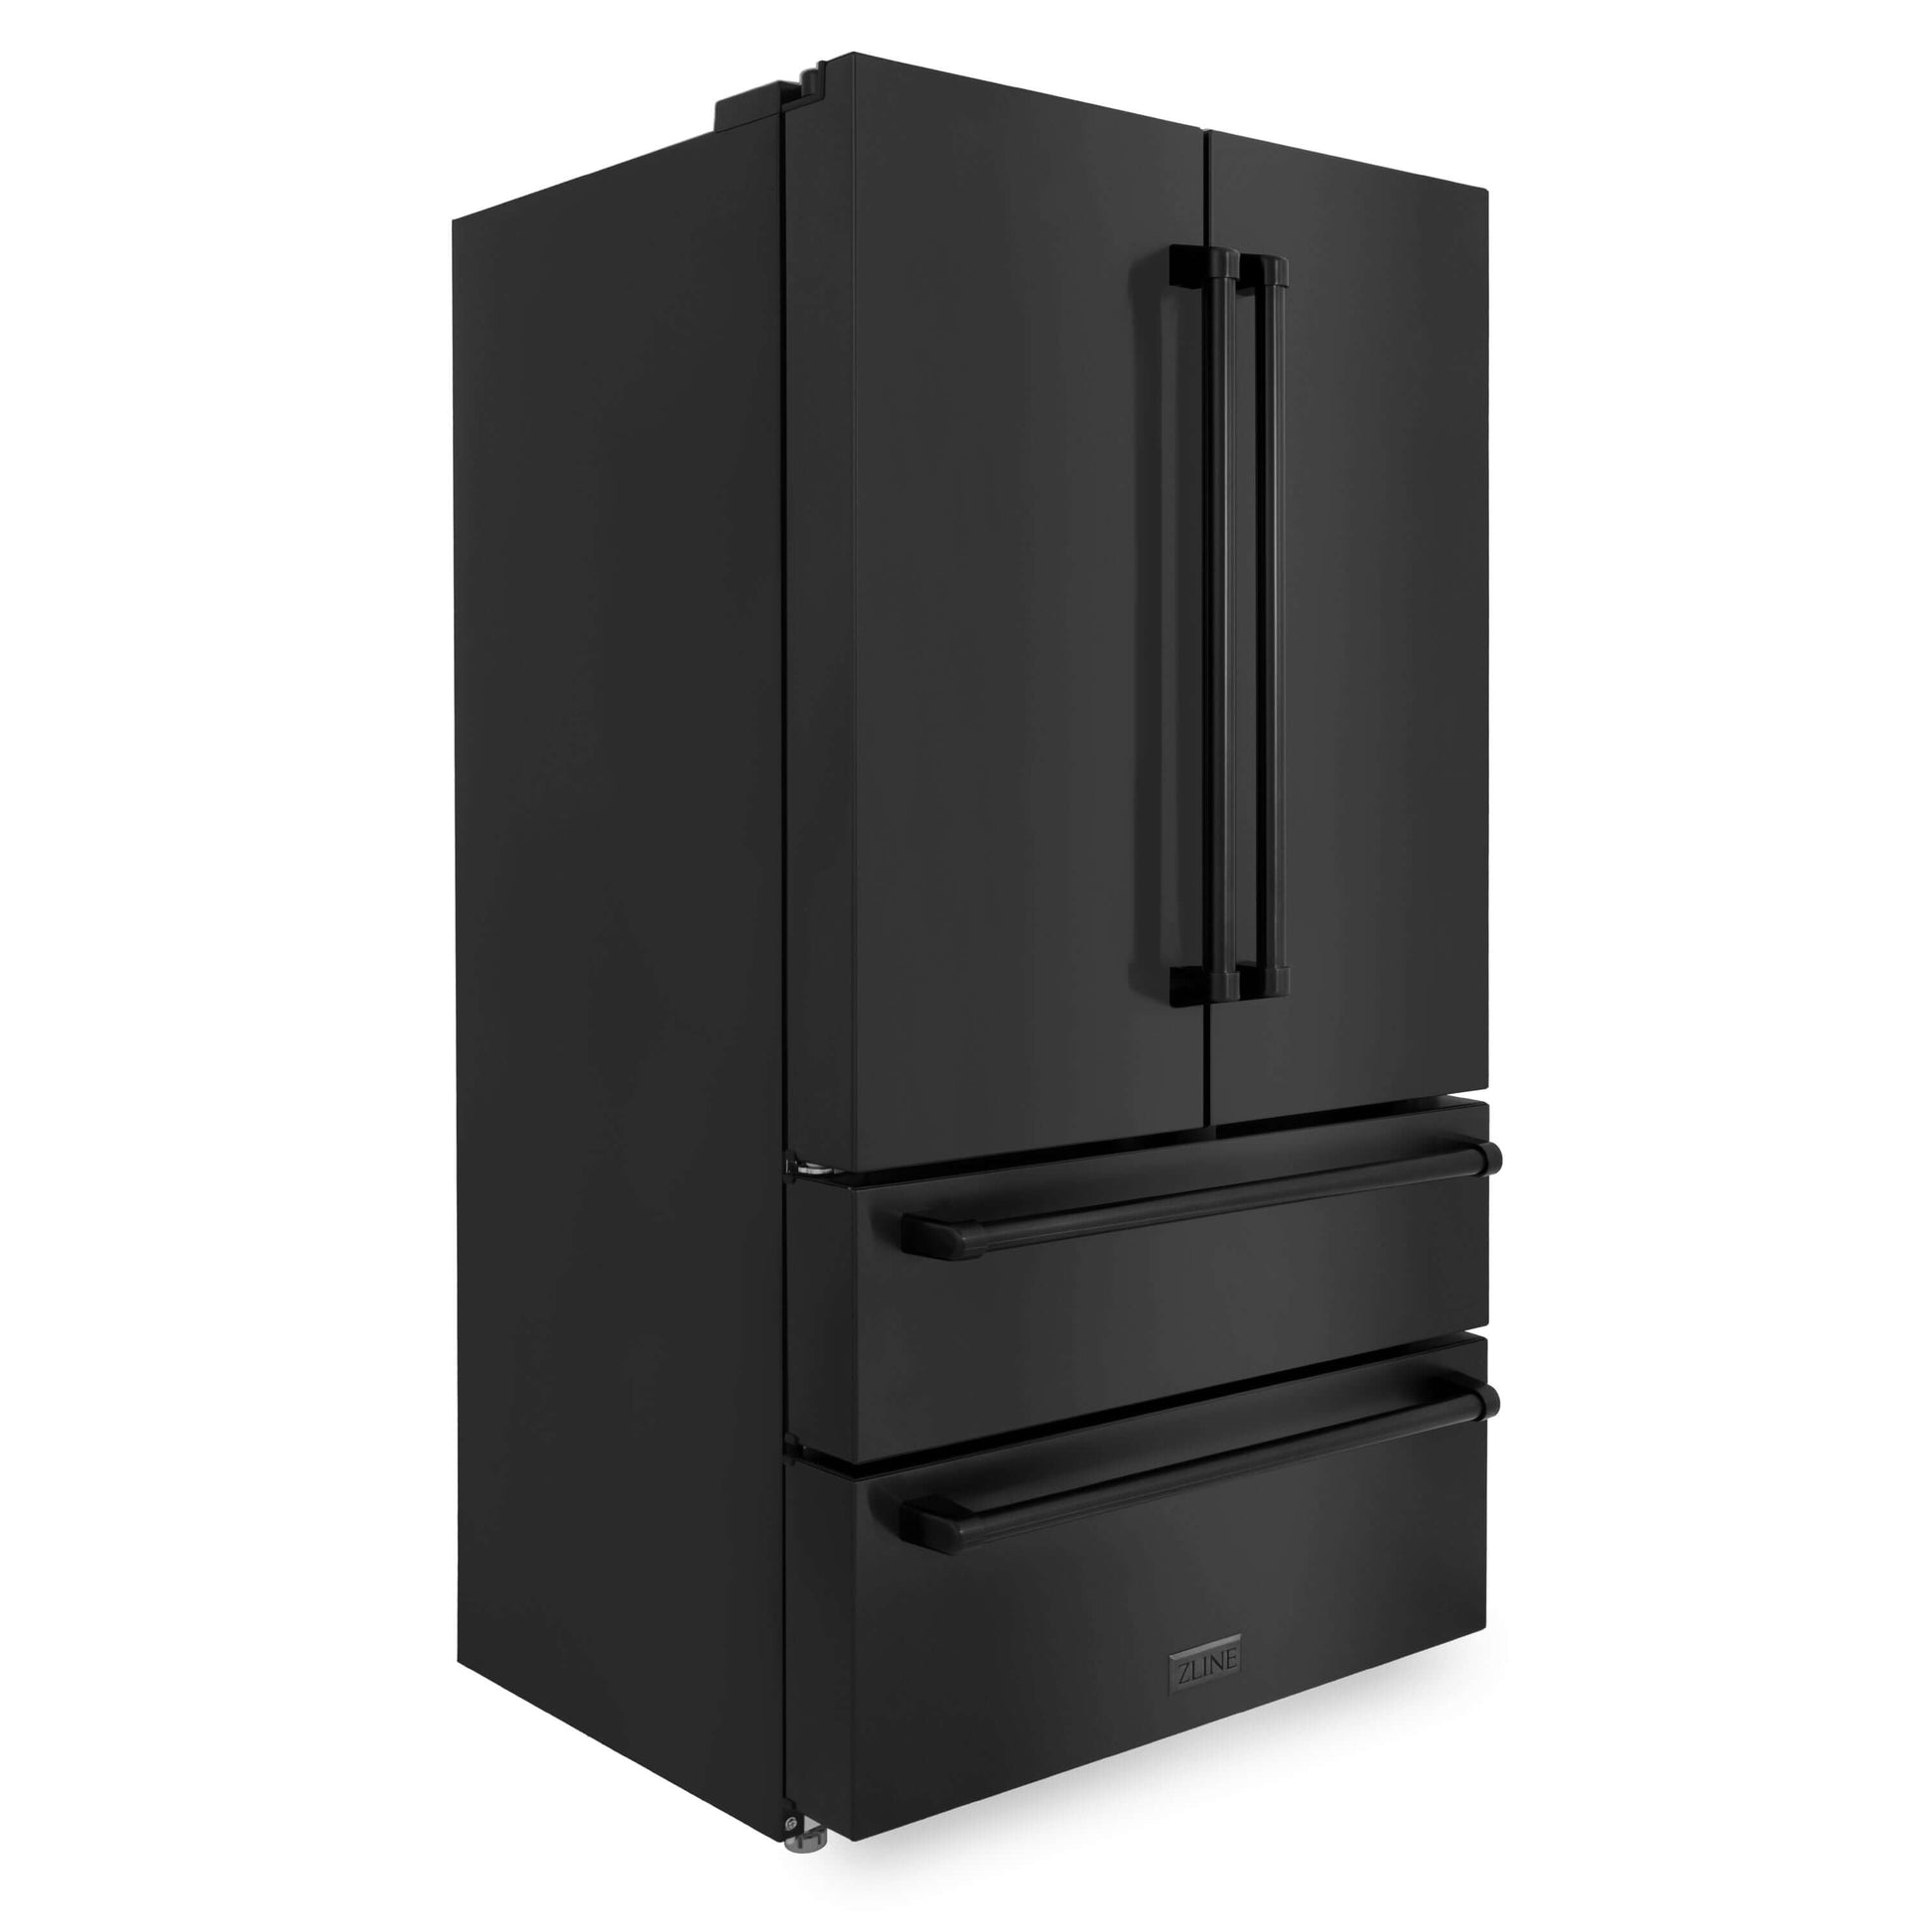 ZLINE 36" Freestanding French Door Refrigerator with Internal Ice Maker